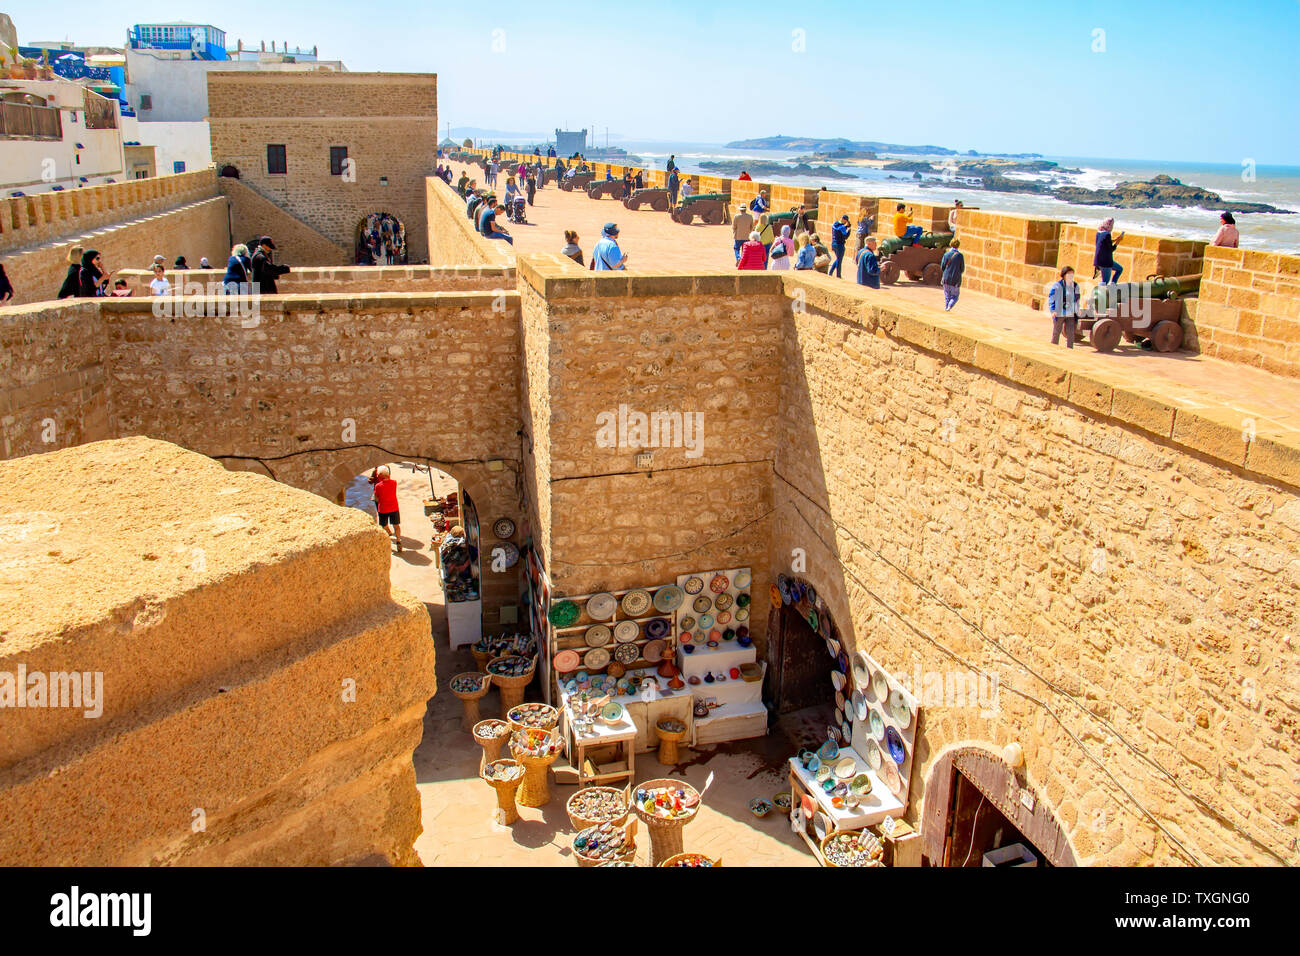 Touristen der Stadtmauer von Essaouira, Marokko klettern. Brass Cannon an den Wänden und es gibt einen herrlichen Blick auf den Atlantischen Ozean. Stockfoto